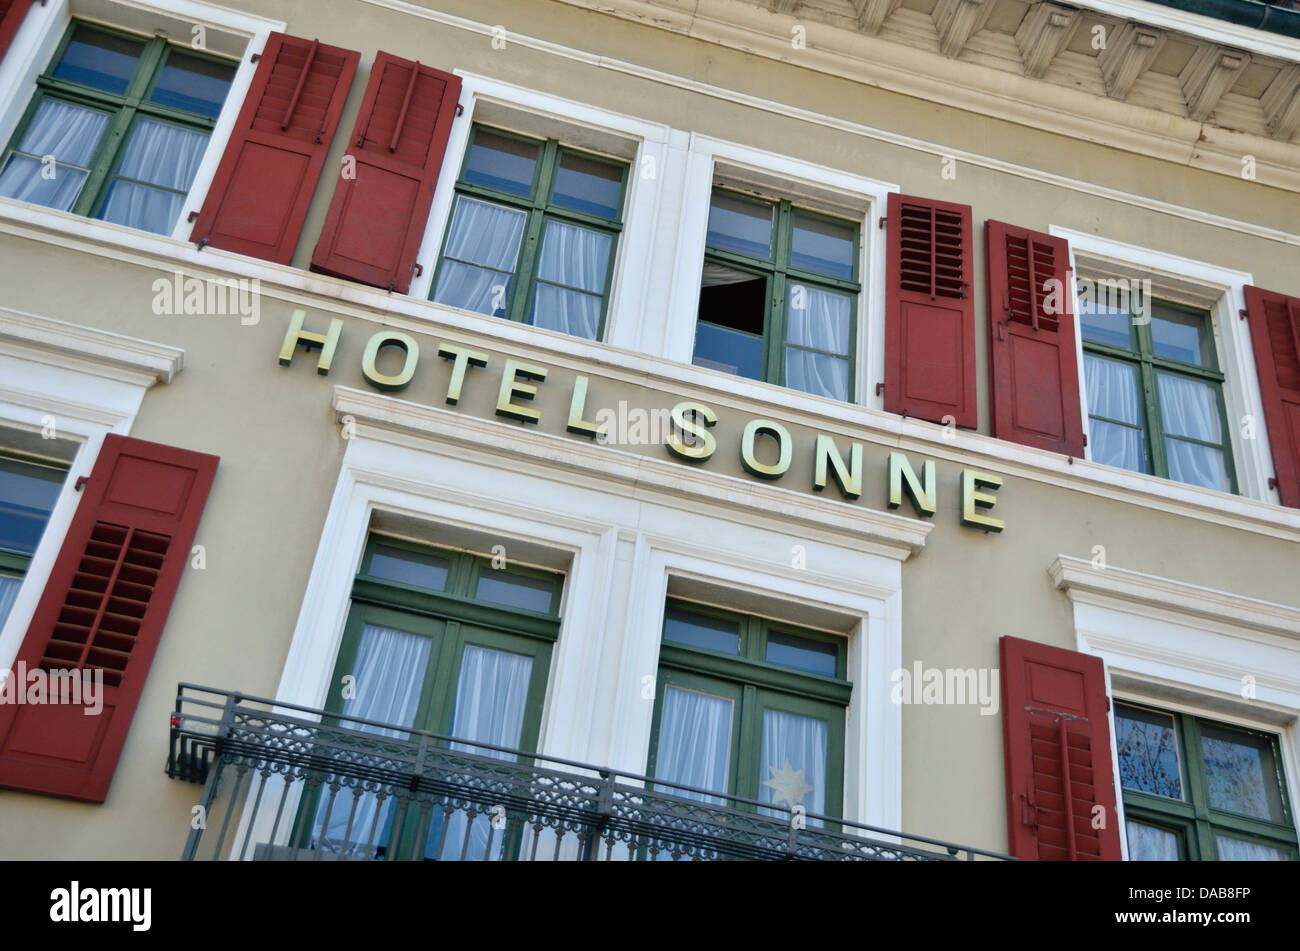 Hotel Sonne, Sissach, Basel-Landschaft, Switzerland. Stock Photo